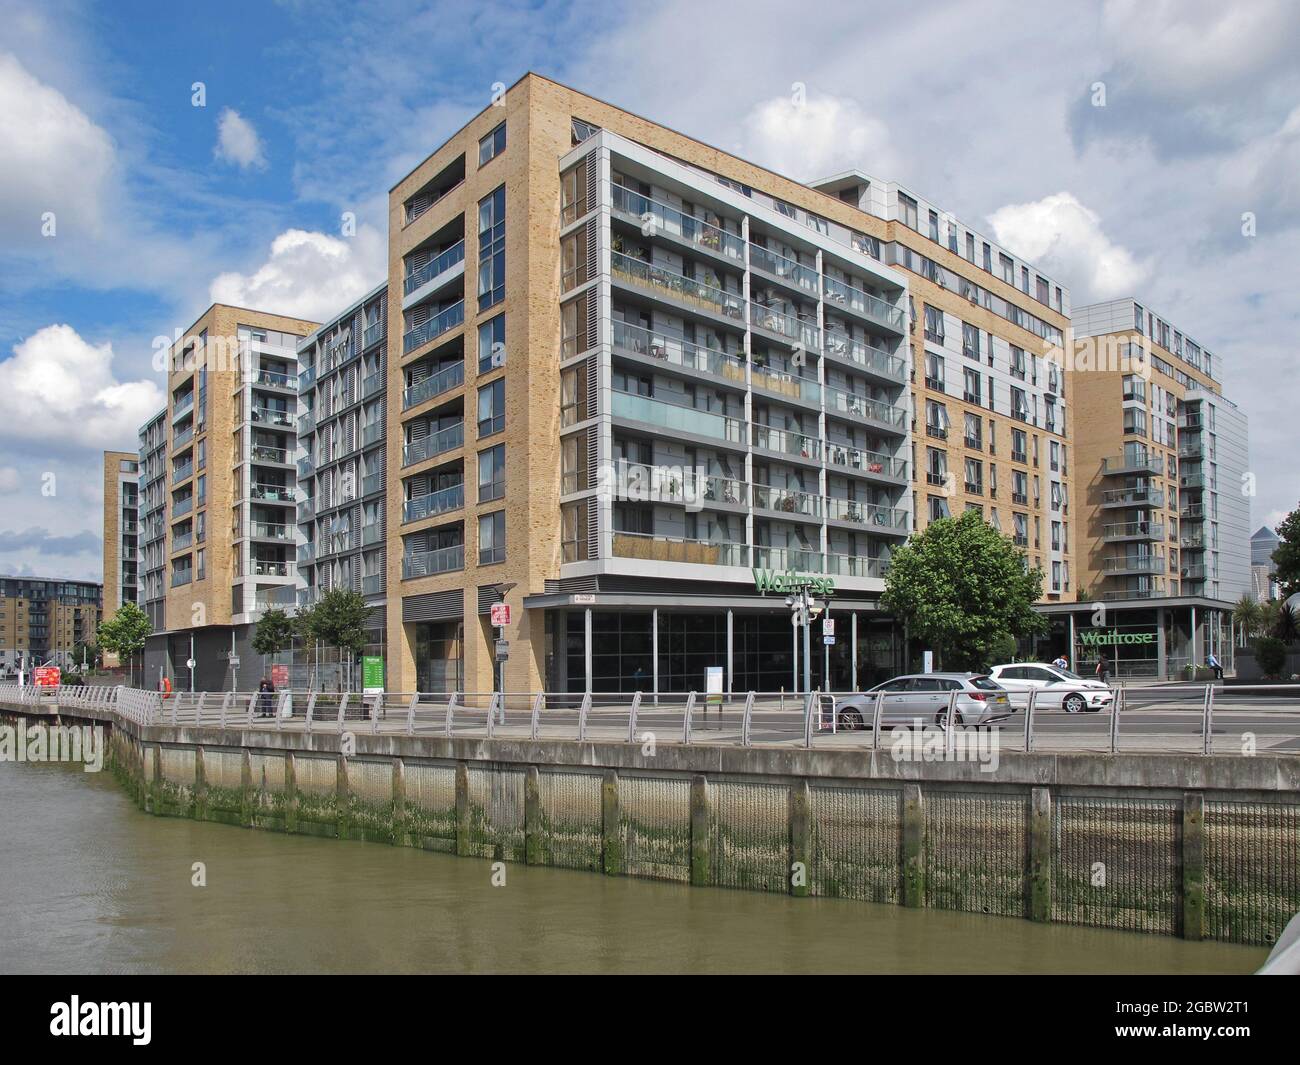 Appartamenti di nuova costruzione alla foce di Deptford Creek, Greenwich, Londra, Regno Unito. Fiume Tamigi oltre. Alta marea. Incorpora anche il supermercato Waitrose. Foto Stock